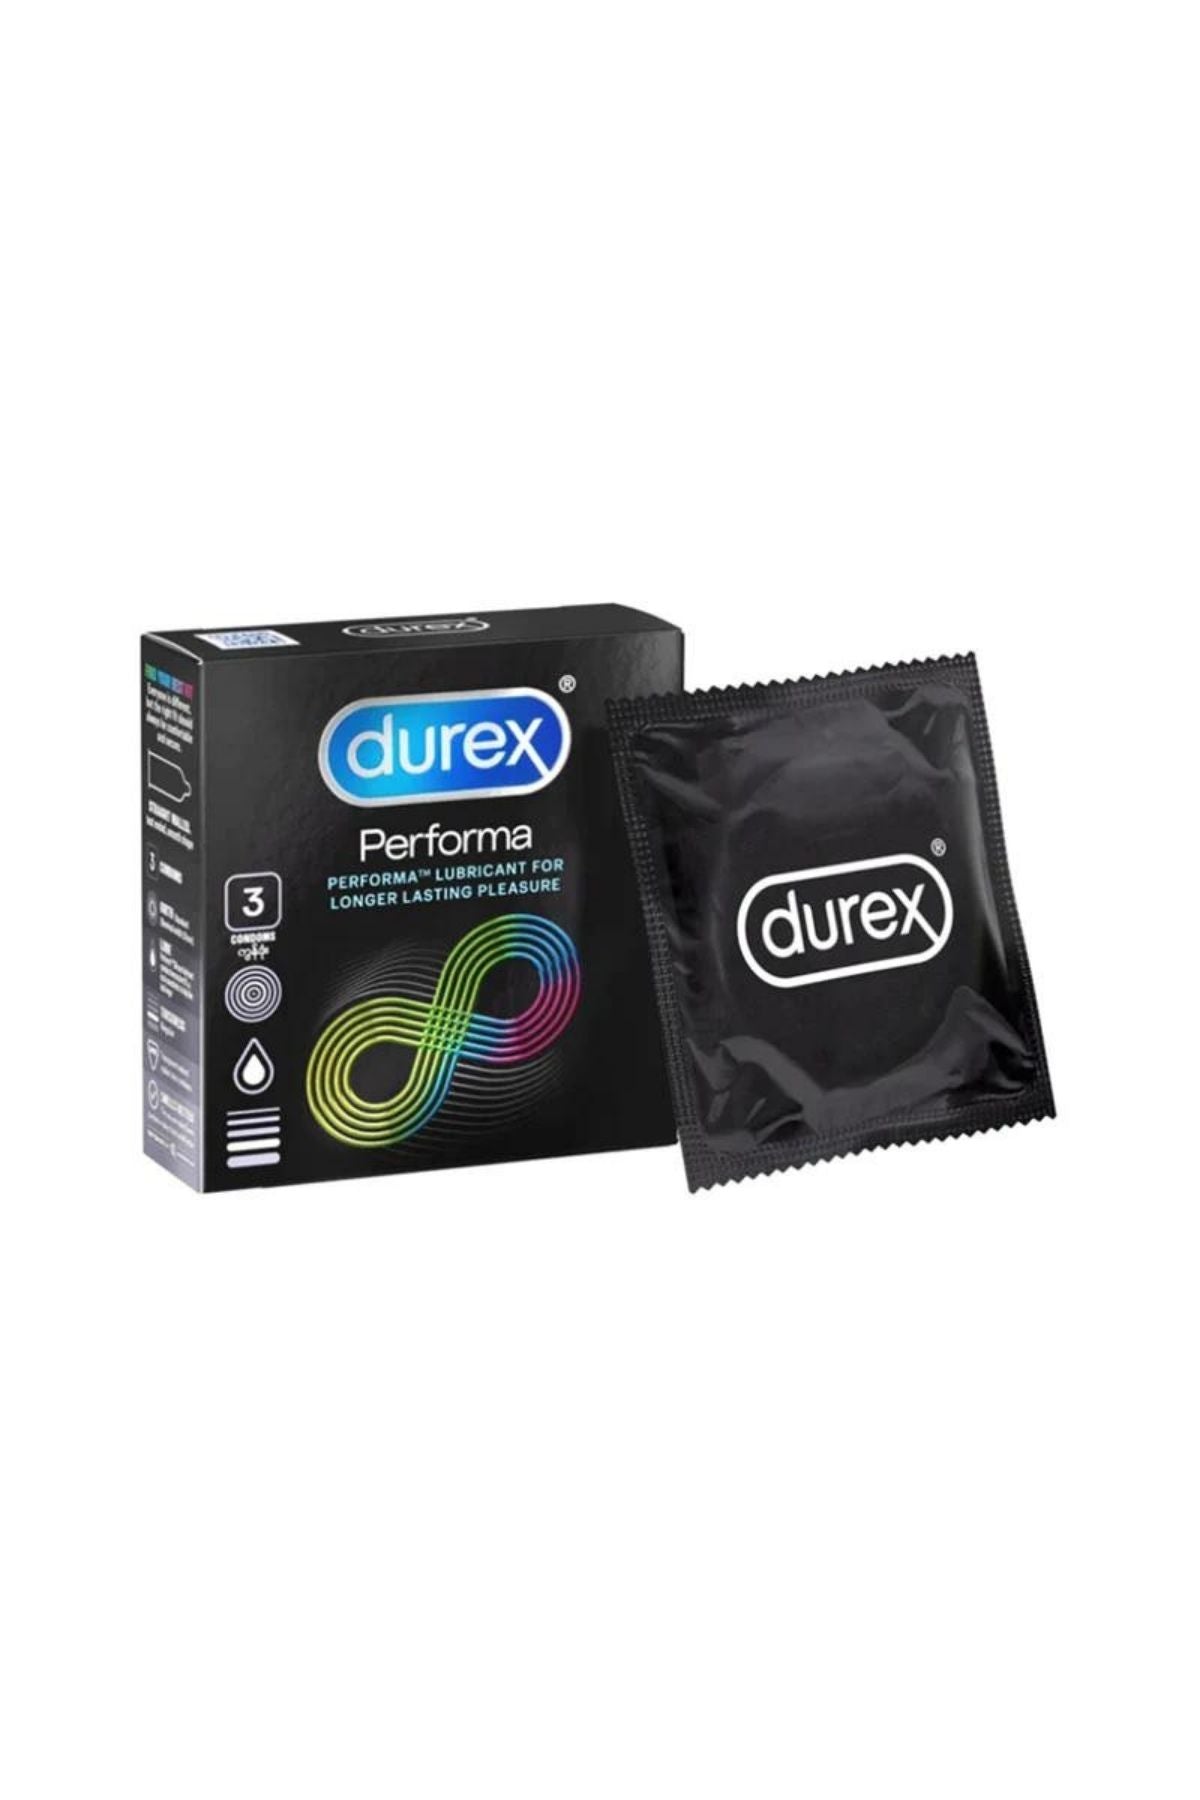 Durex Performa Condoms | 3 Pack